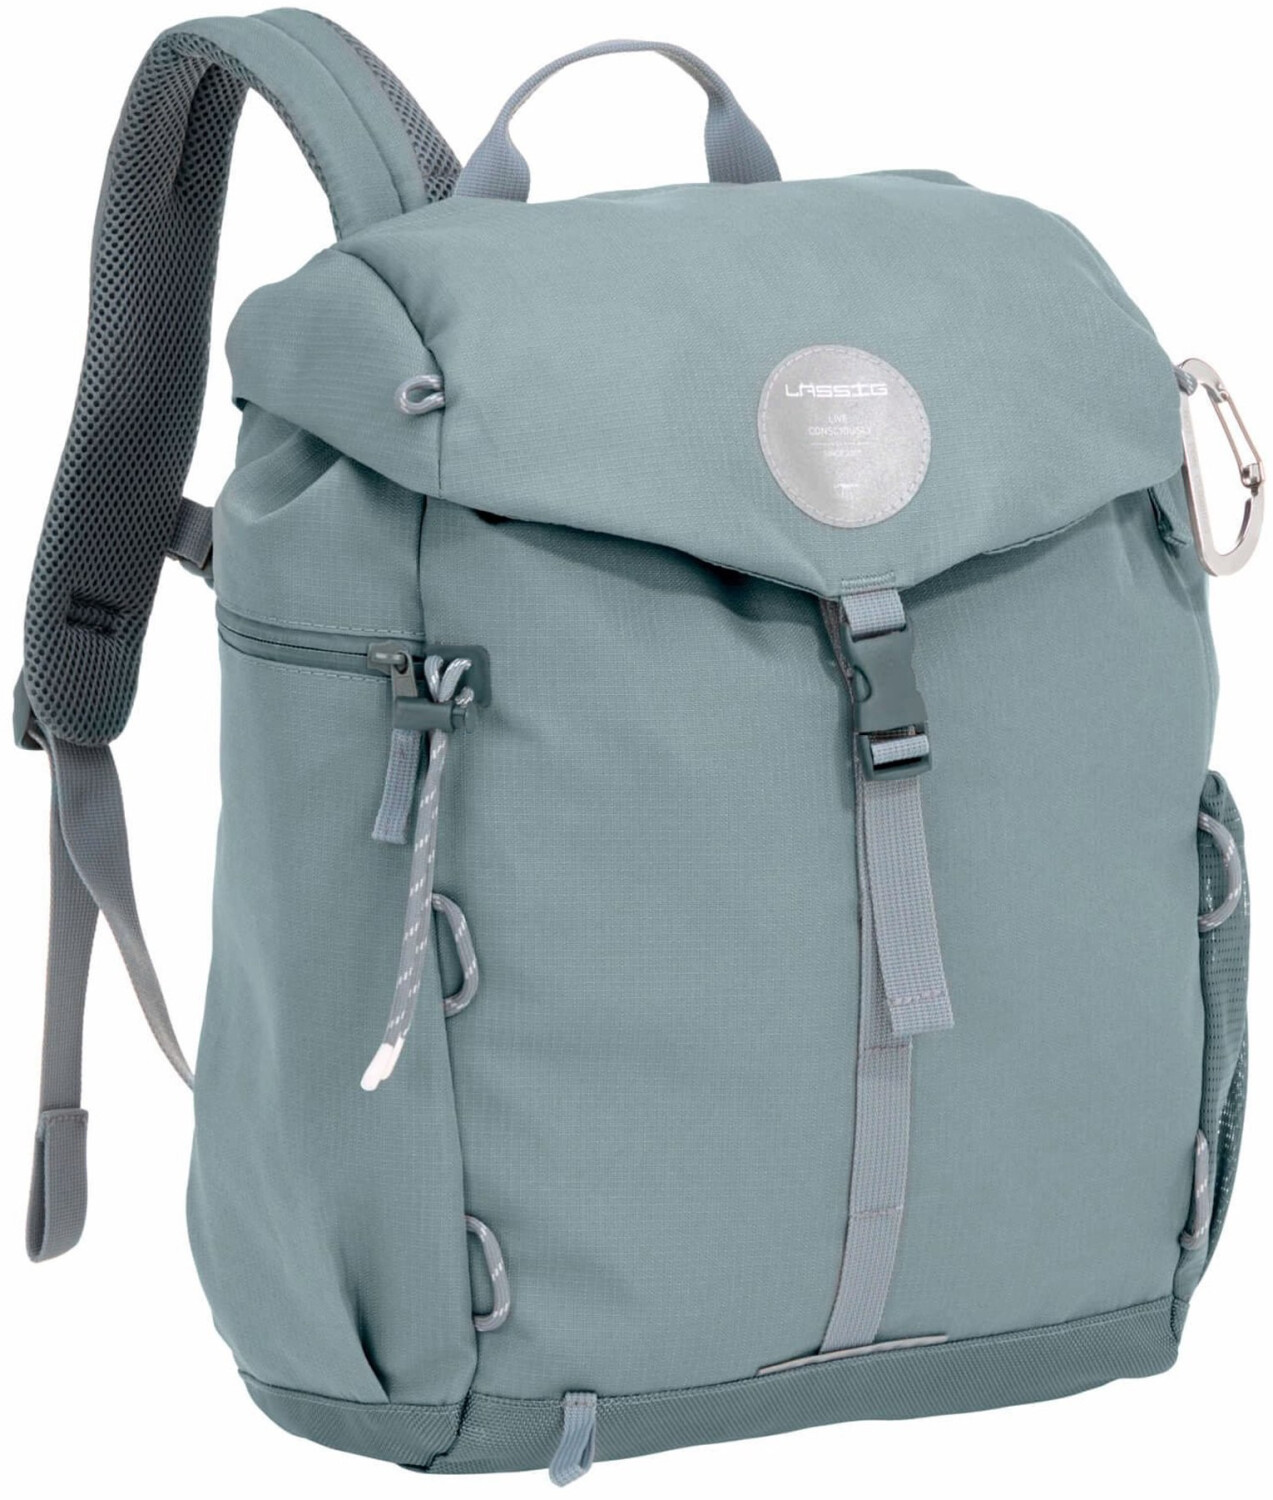 Lässig Green Label Outdoor Backpack € bei 76,99 Preisvergleich ab 